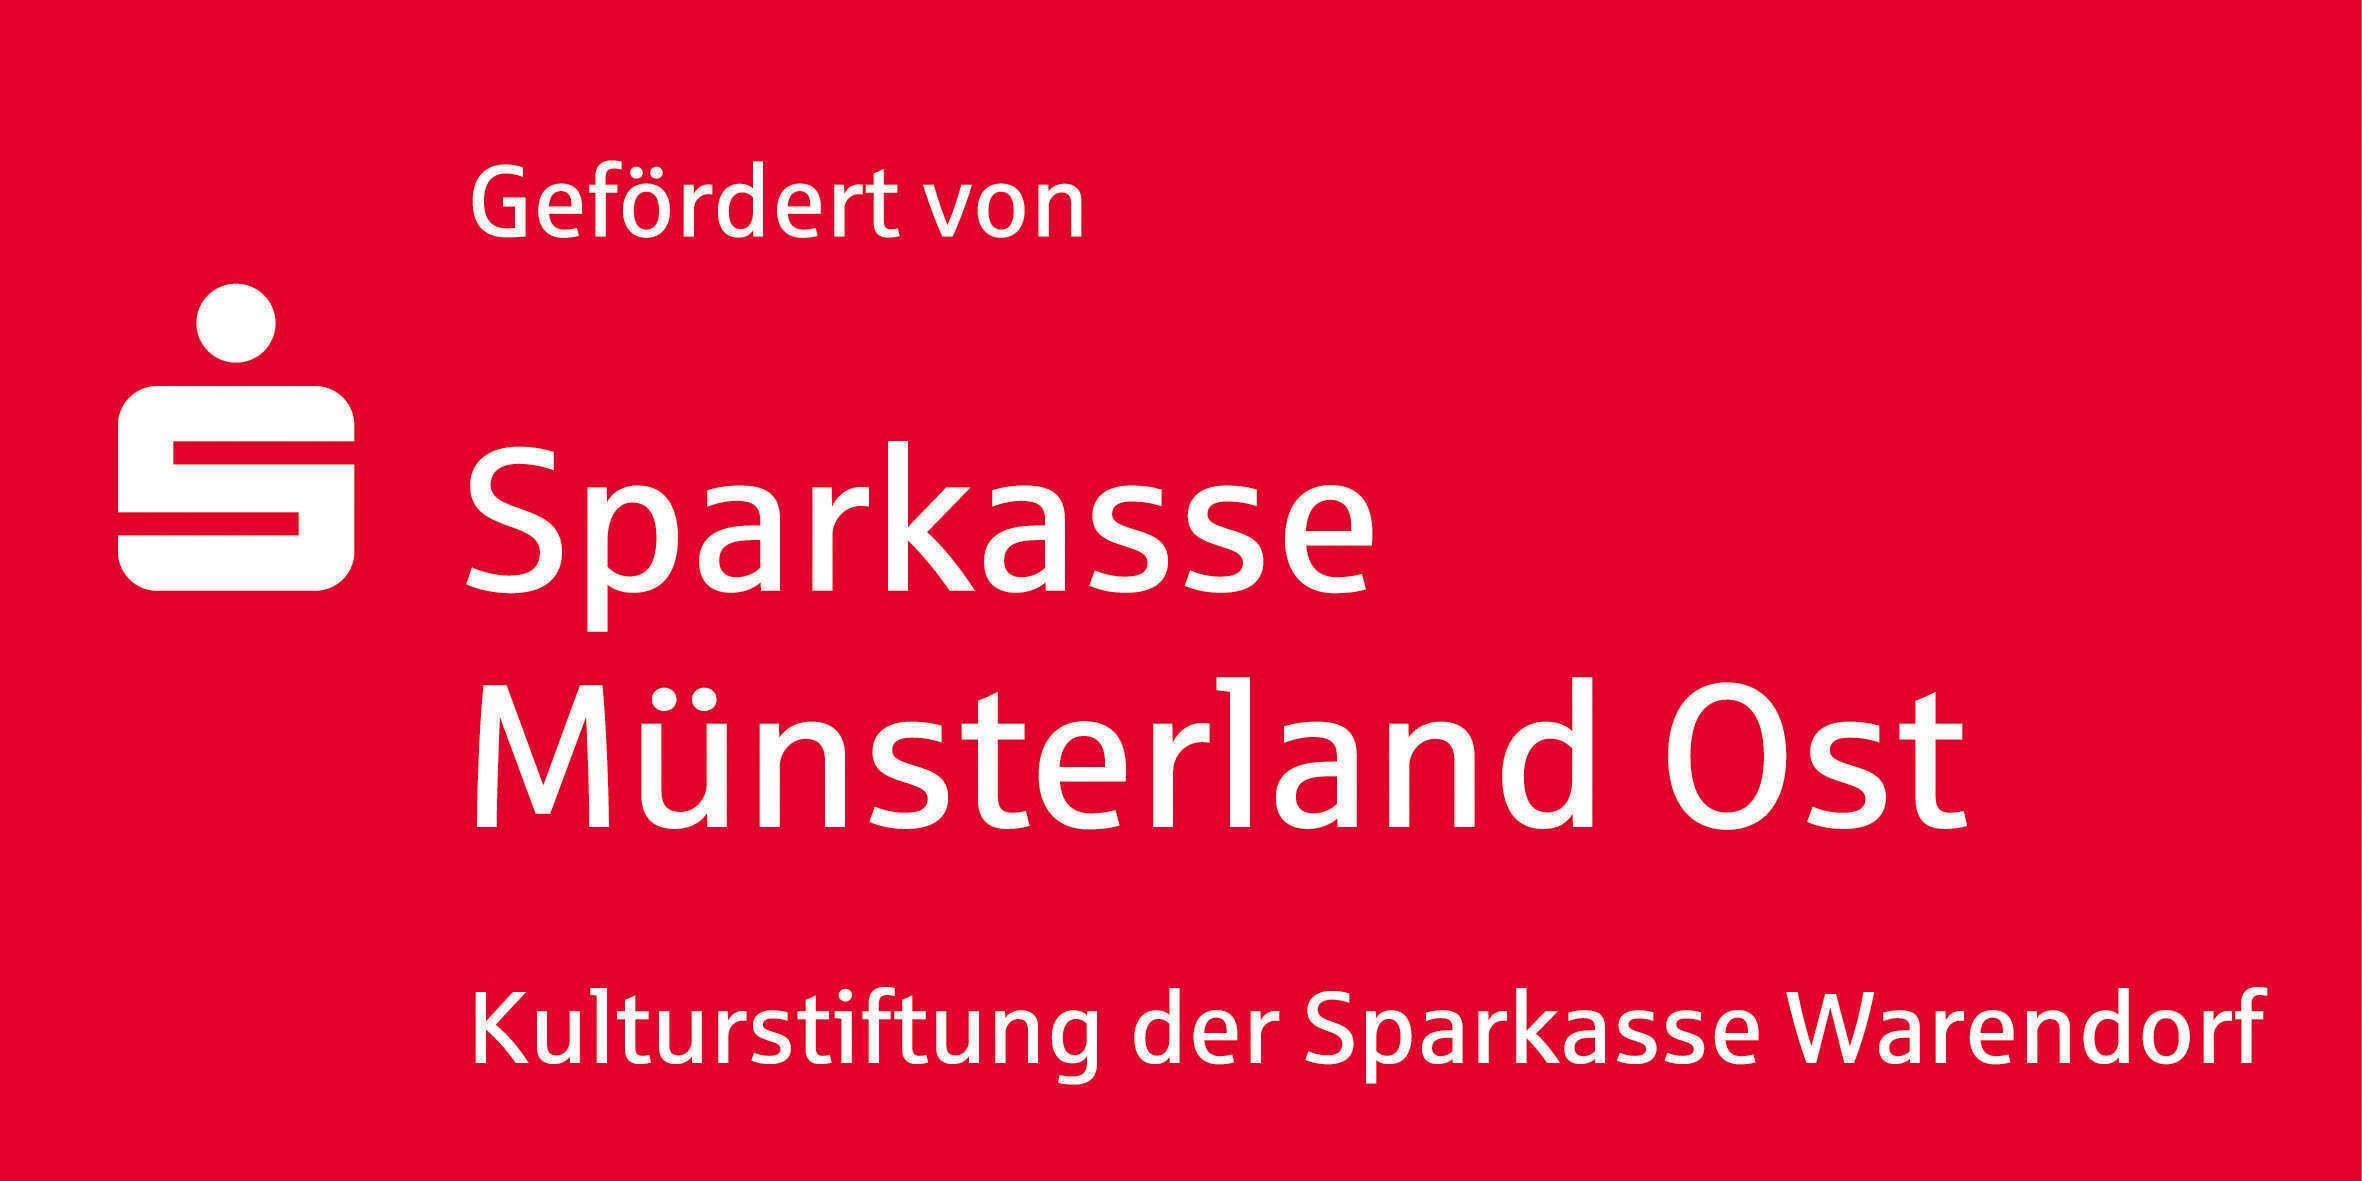 2017 Logo Kulturstiftung der Sparkasse Muênsterland Ost Kopie